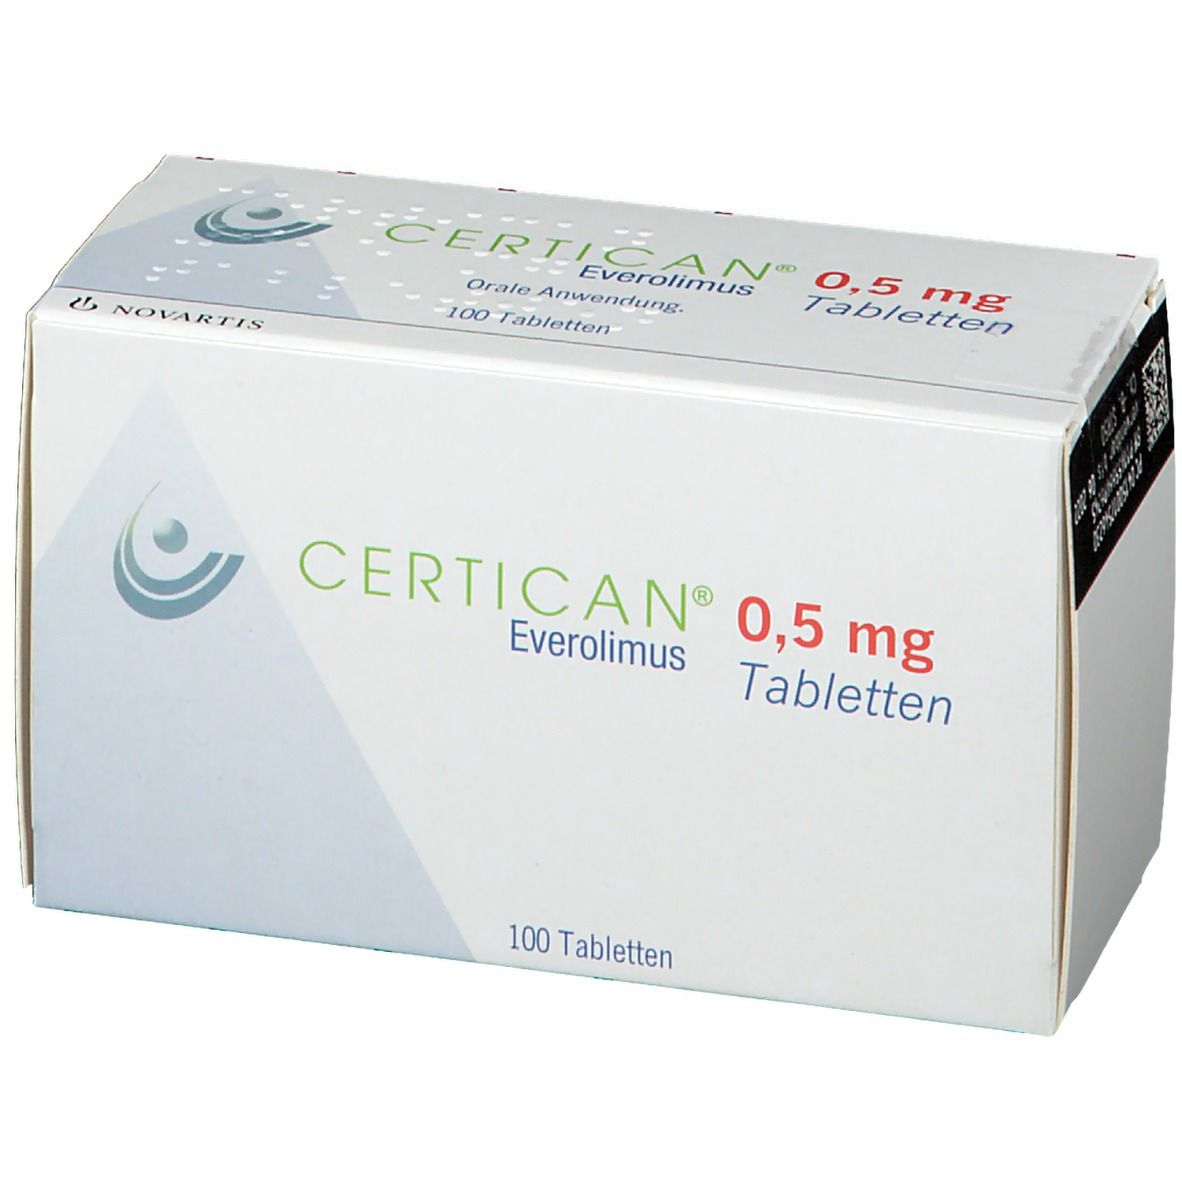 CERTICAN® 0,5 mg